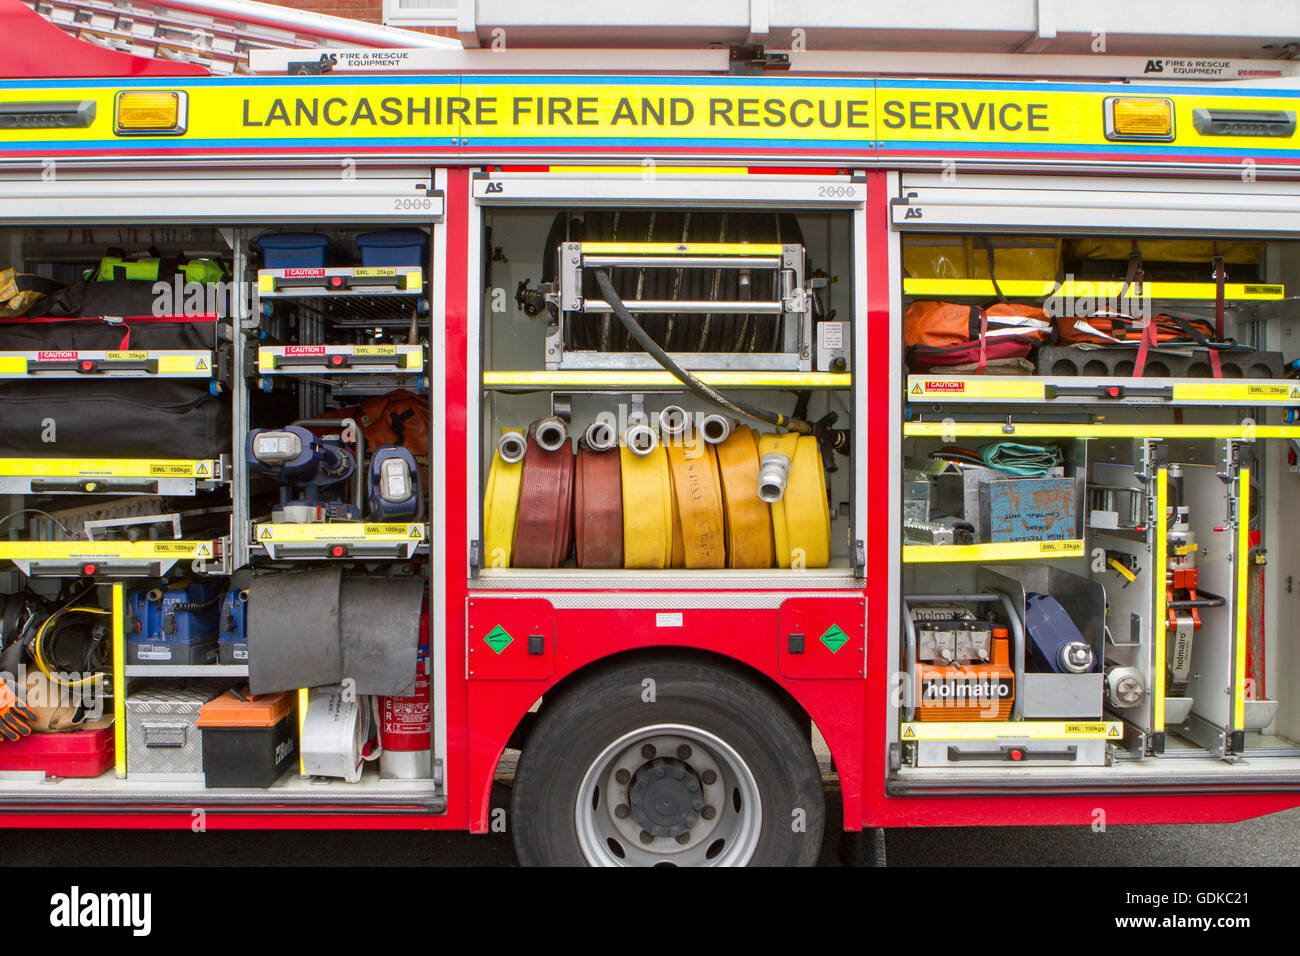 Lancashire Feuer und Rettung Service; Feuerwehrmann Feuerwehr Feuerwehrmann Feuerwehr Rettungsdienst Lebensretter fire truck Schläuche Werkzeuge & Ausrüstung. Stockfoto